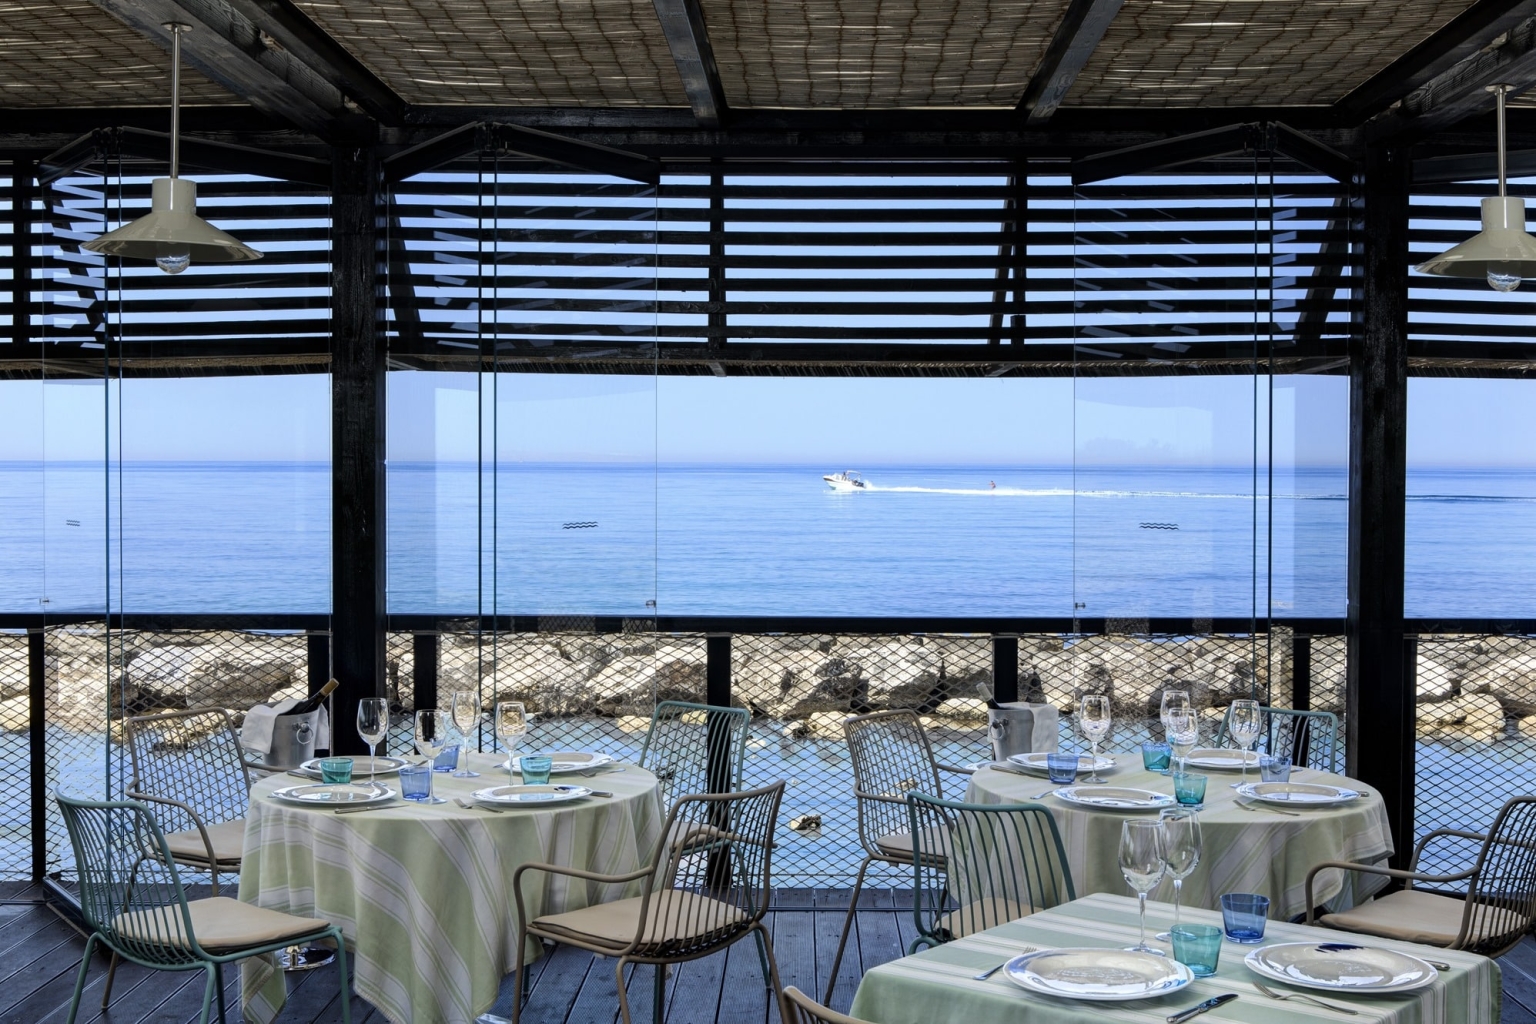 Sizilien Verdura Resort Golf Roccoforte Sciacca Luxus Qualität hochwertig Golfplatz Meer Restauant